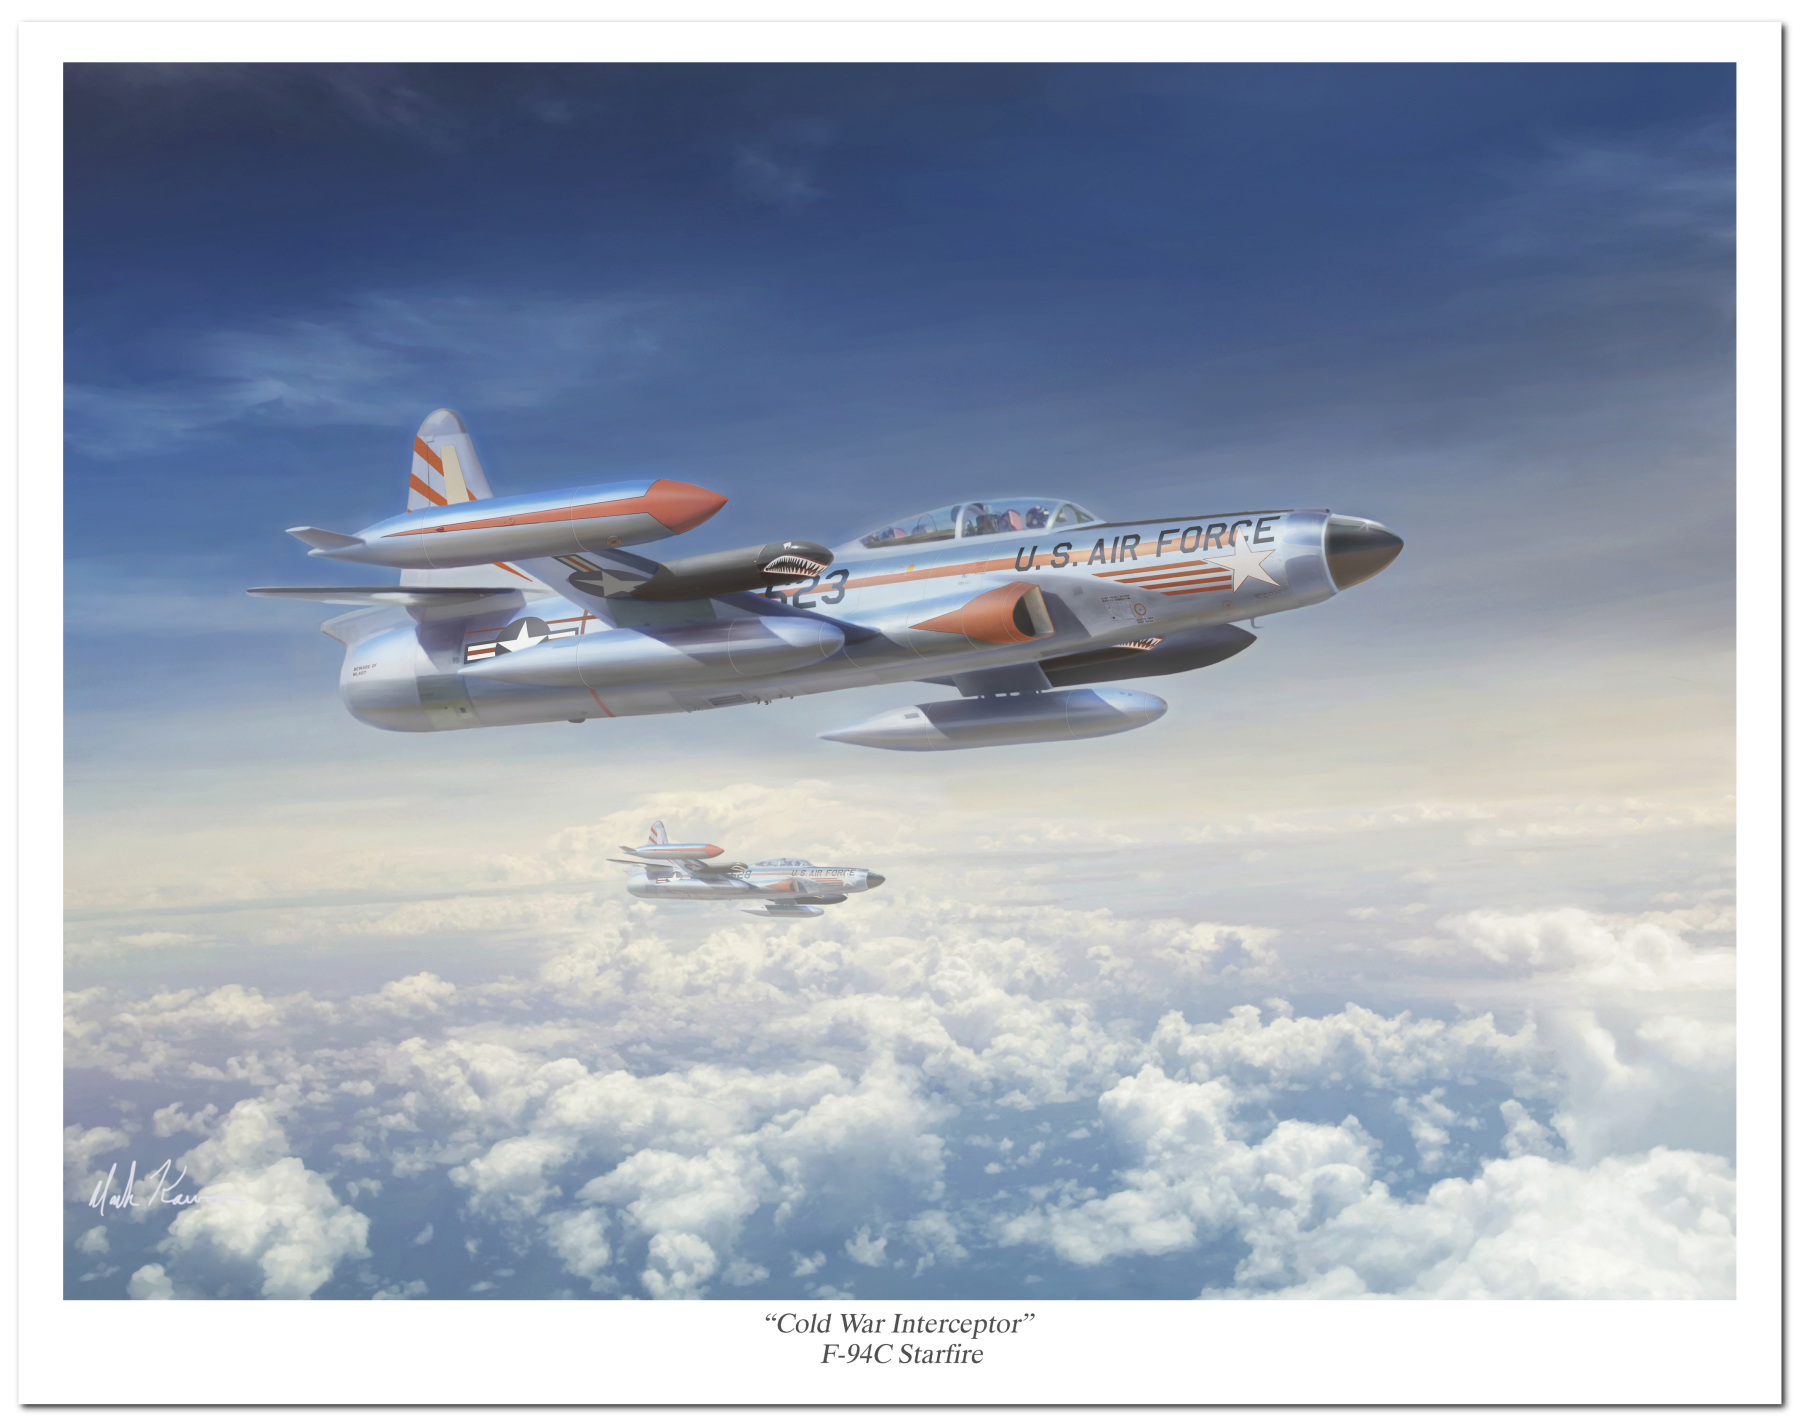 "Cold War Interceptor" by Mark Karvon featuring the USAF F-94C Starfire